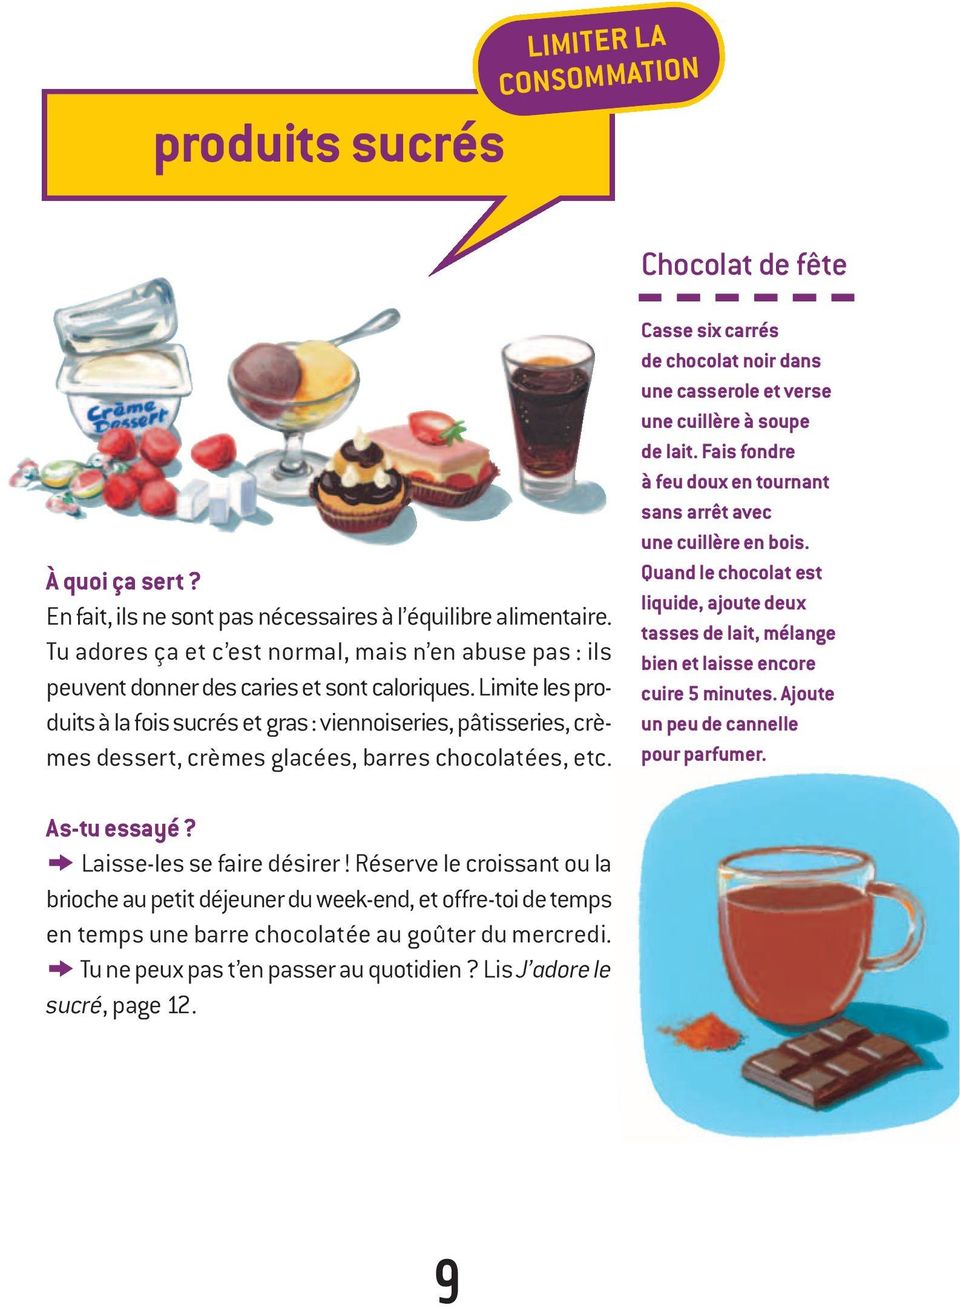 Limite les produits à la fois sucrés et gras : viennoiseries, pâtisseries, crèmes dessert, crèmes glacées, barres chocolatées, etc.